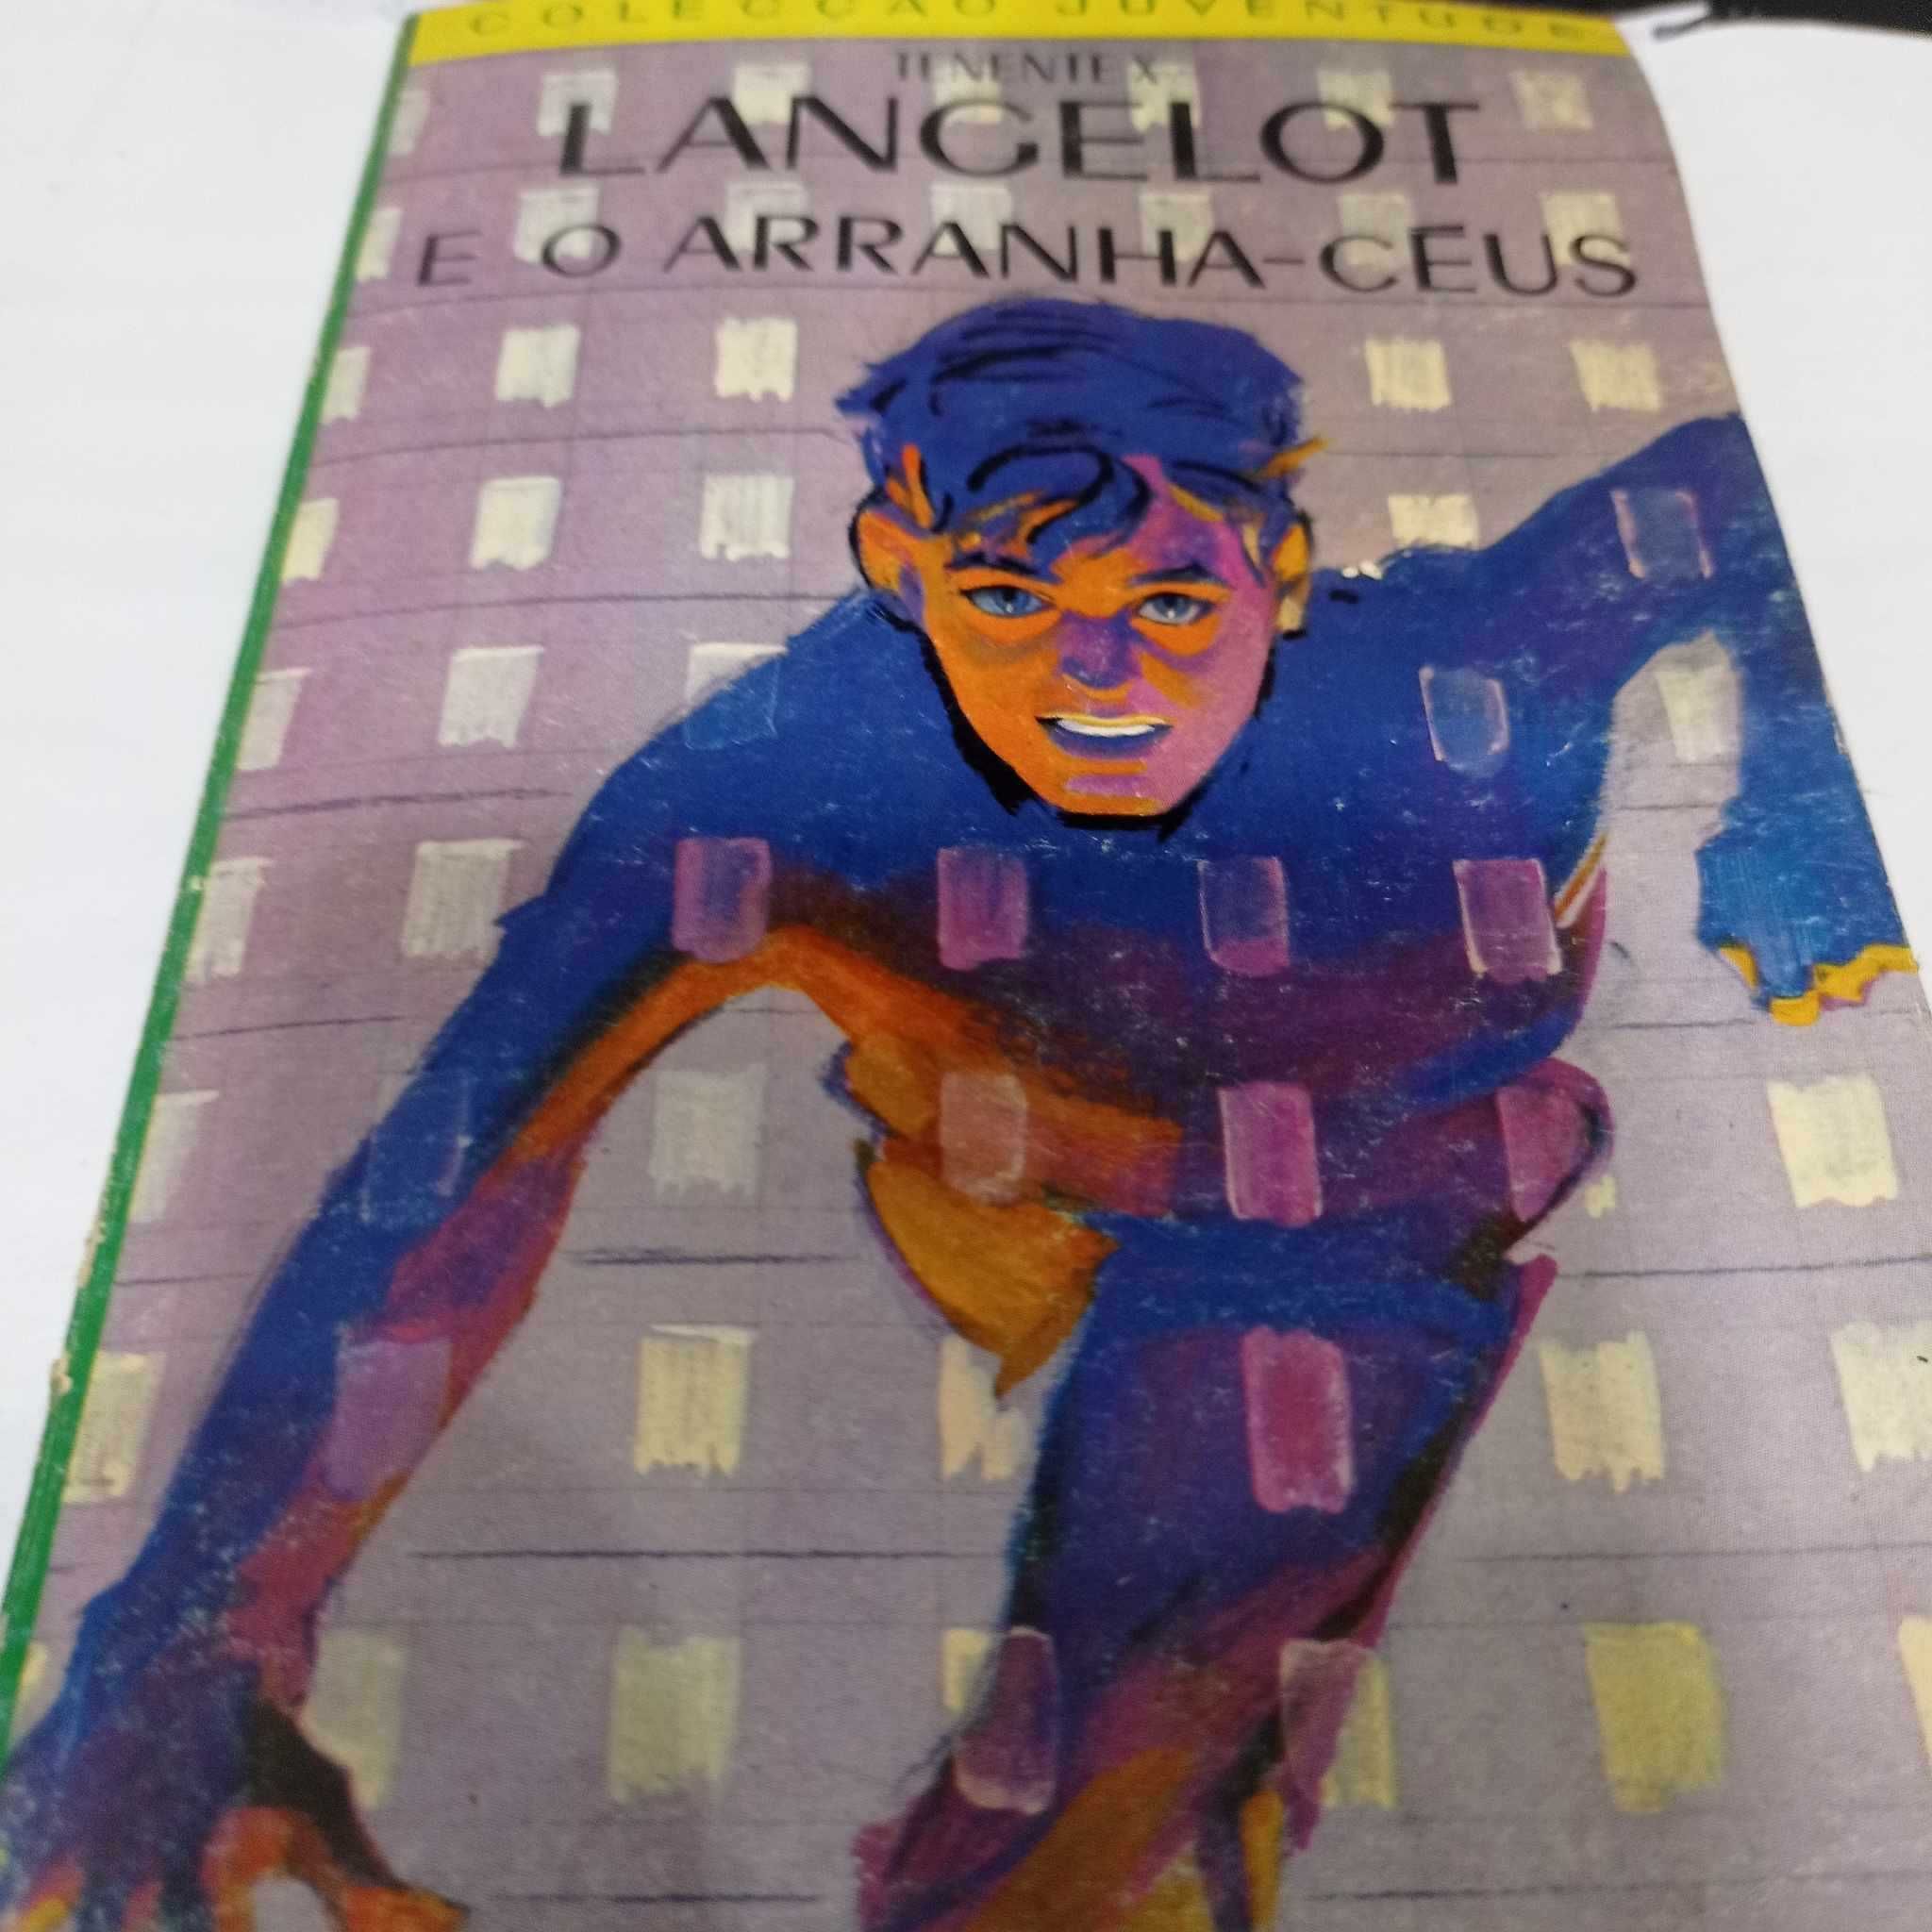 vendo livro Lancelot e o aranha ceus